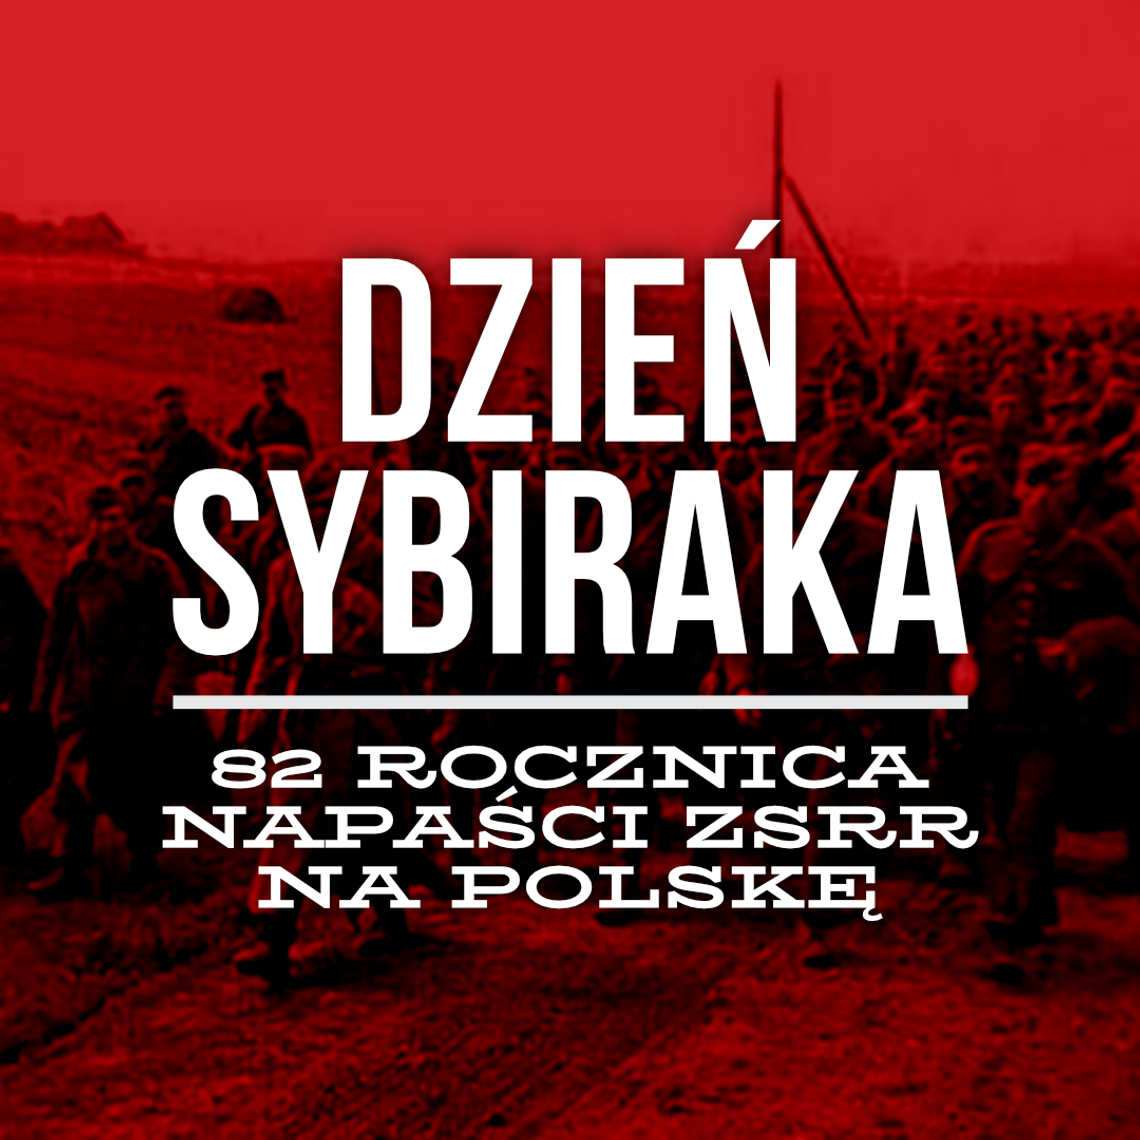 Dzień Sybiraka i 82 rocznica napaści ZSRR na Polskę